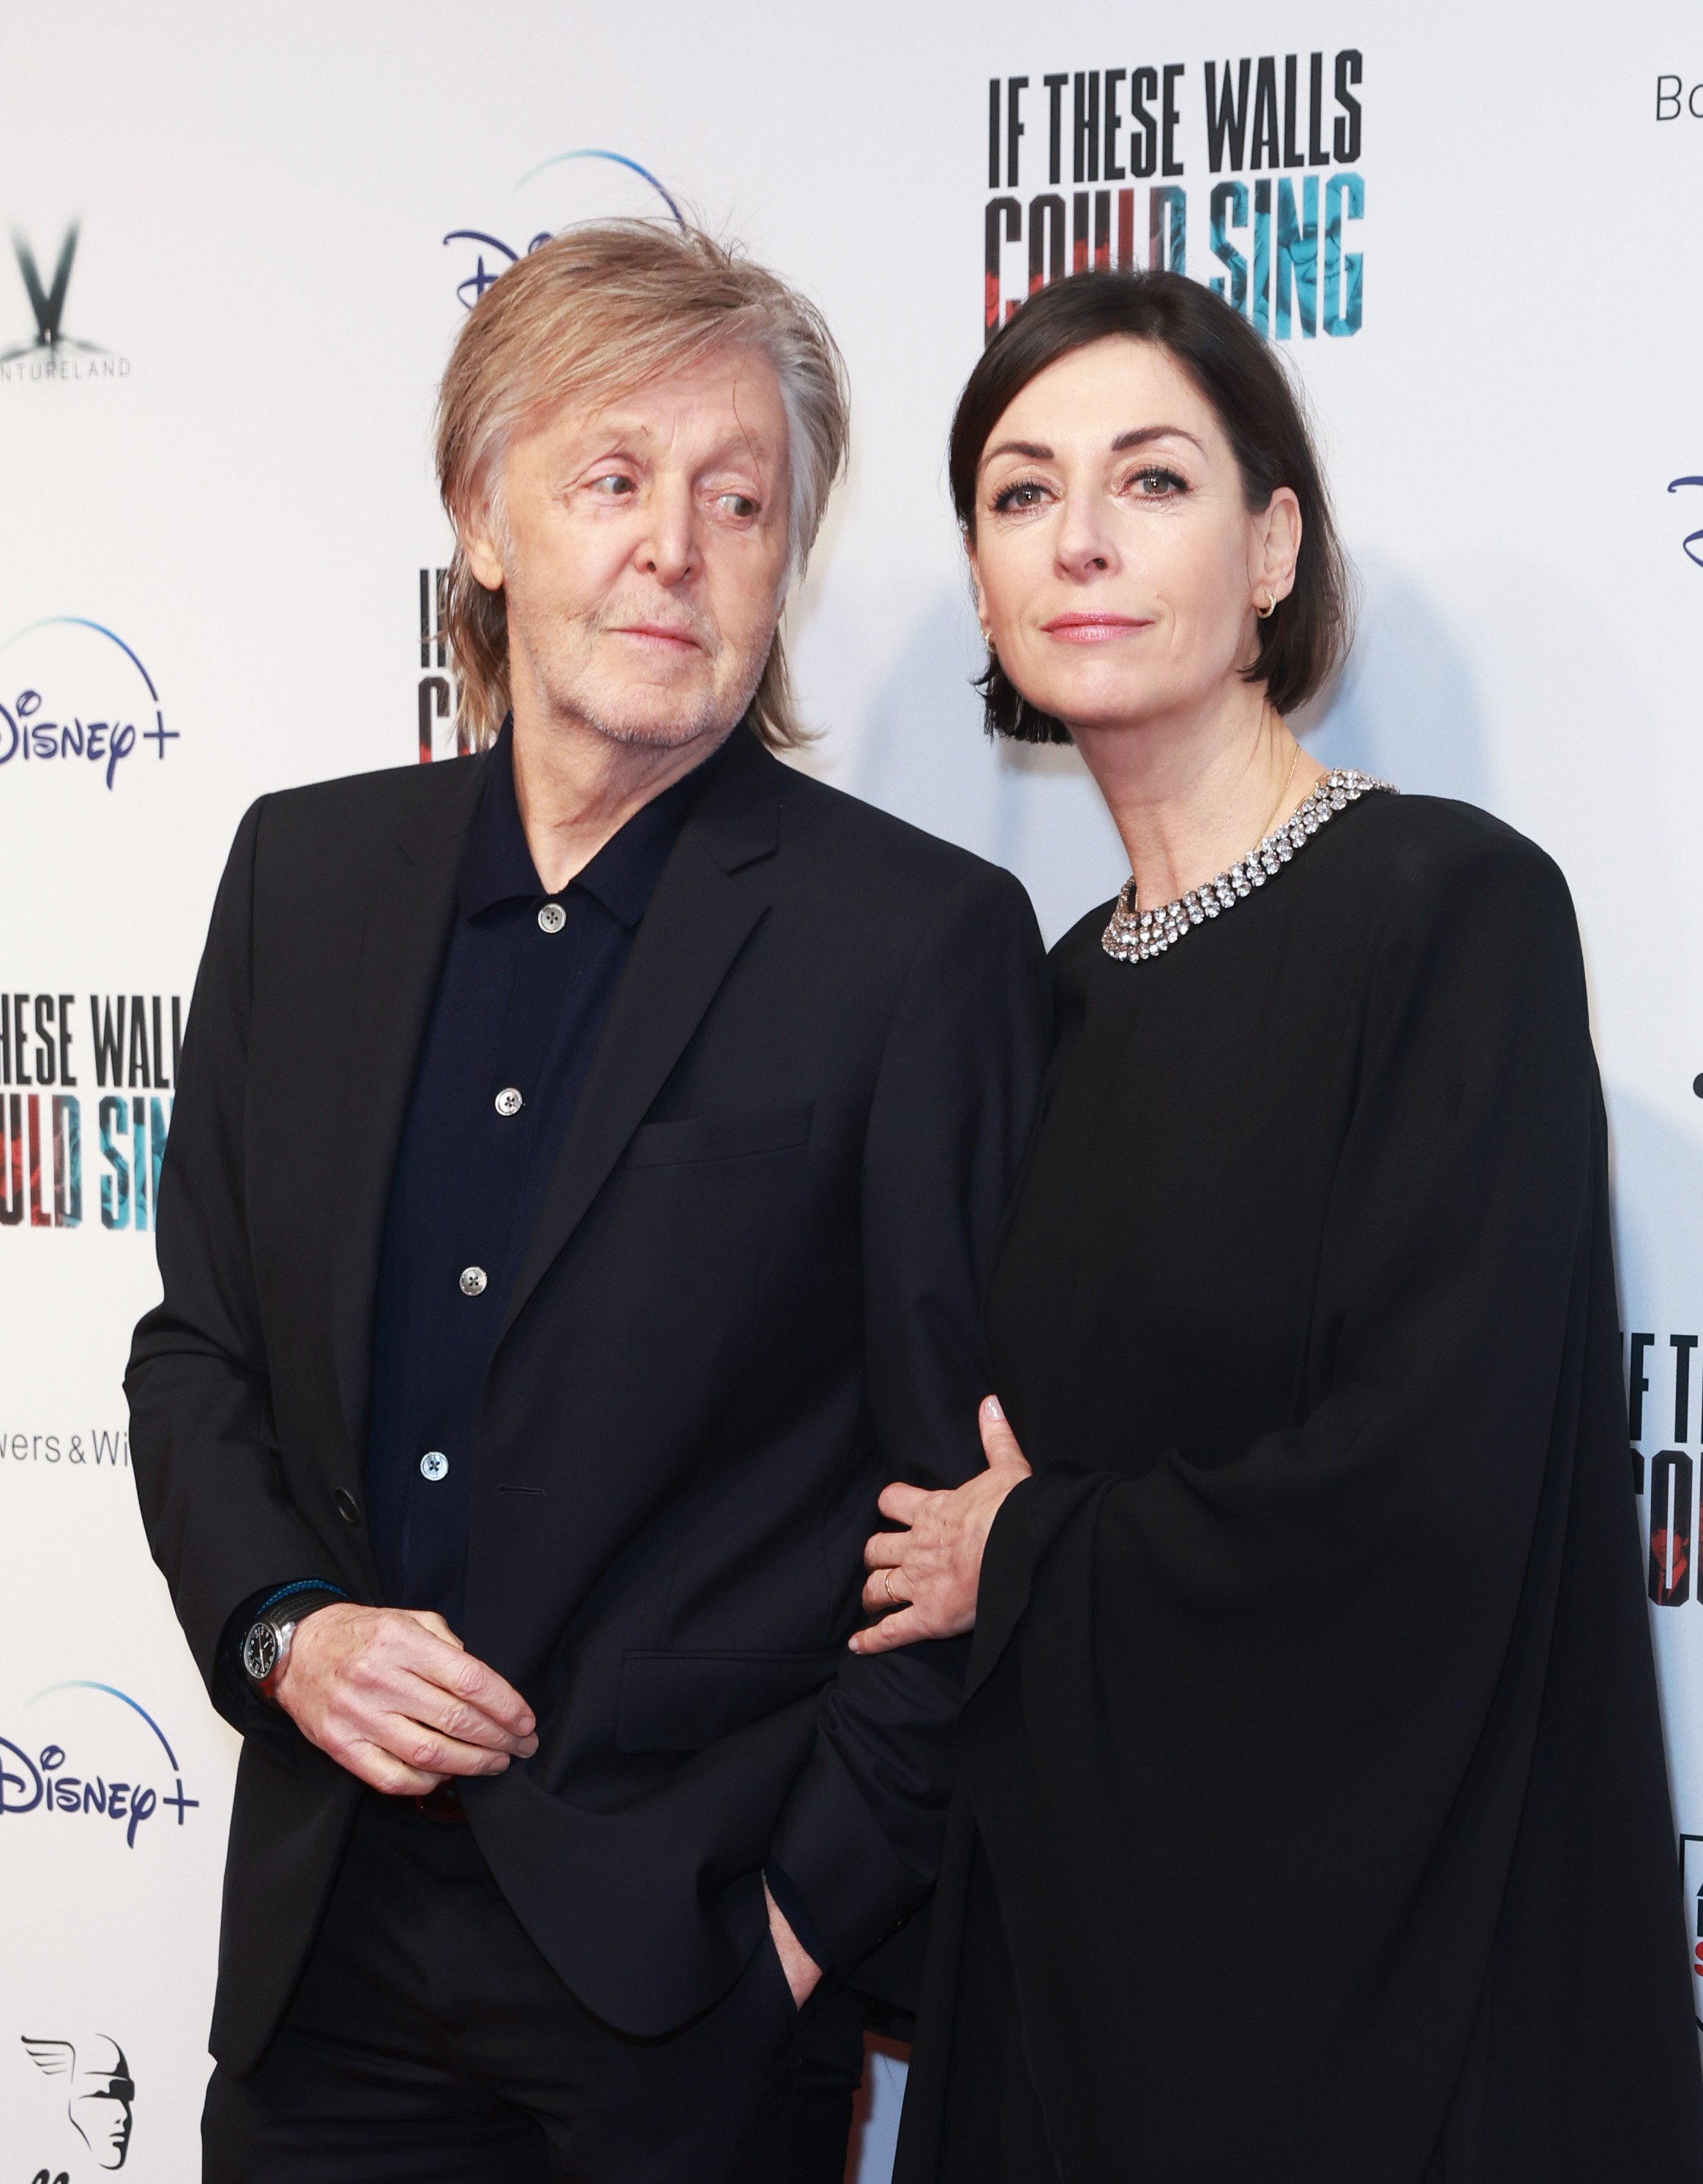 Пол и Мэри Маккартни на лондонской премьере фильма «Если бы эти стены могли петь» 12 декабря 2022 года в Лондоне, Англия |  Источник: Гетти Изображений